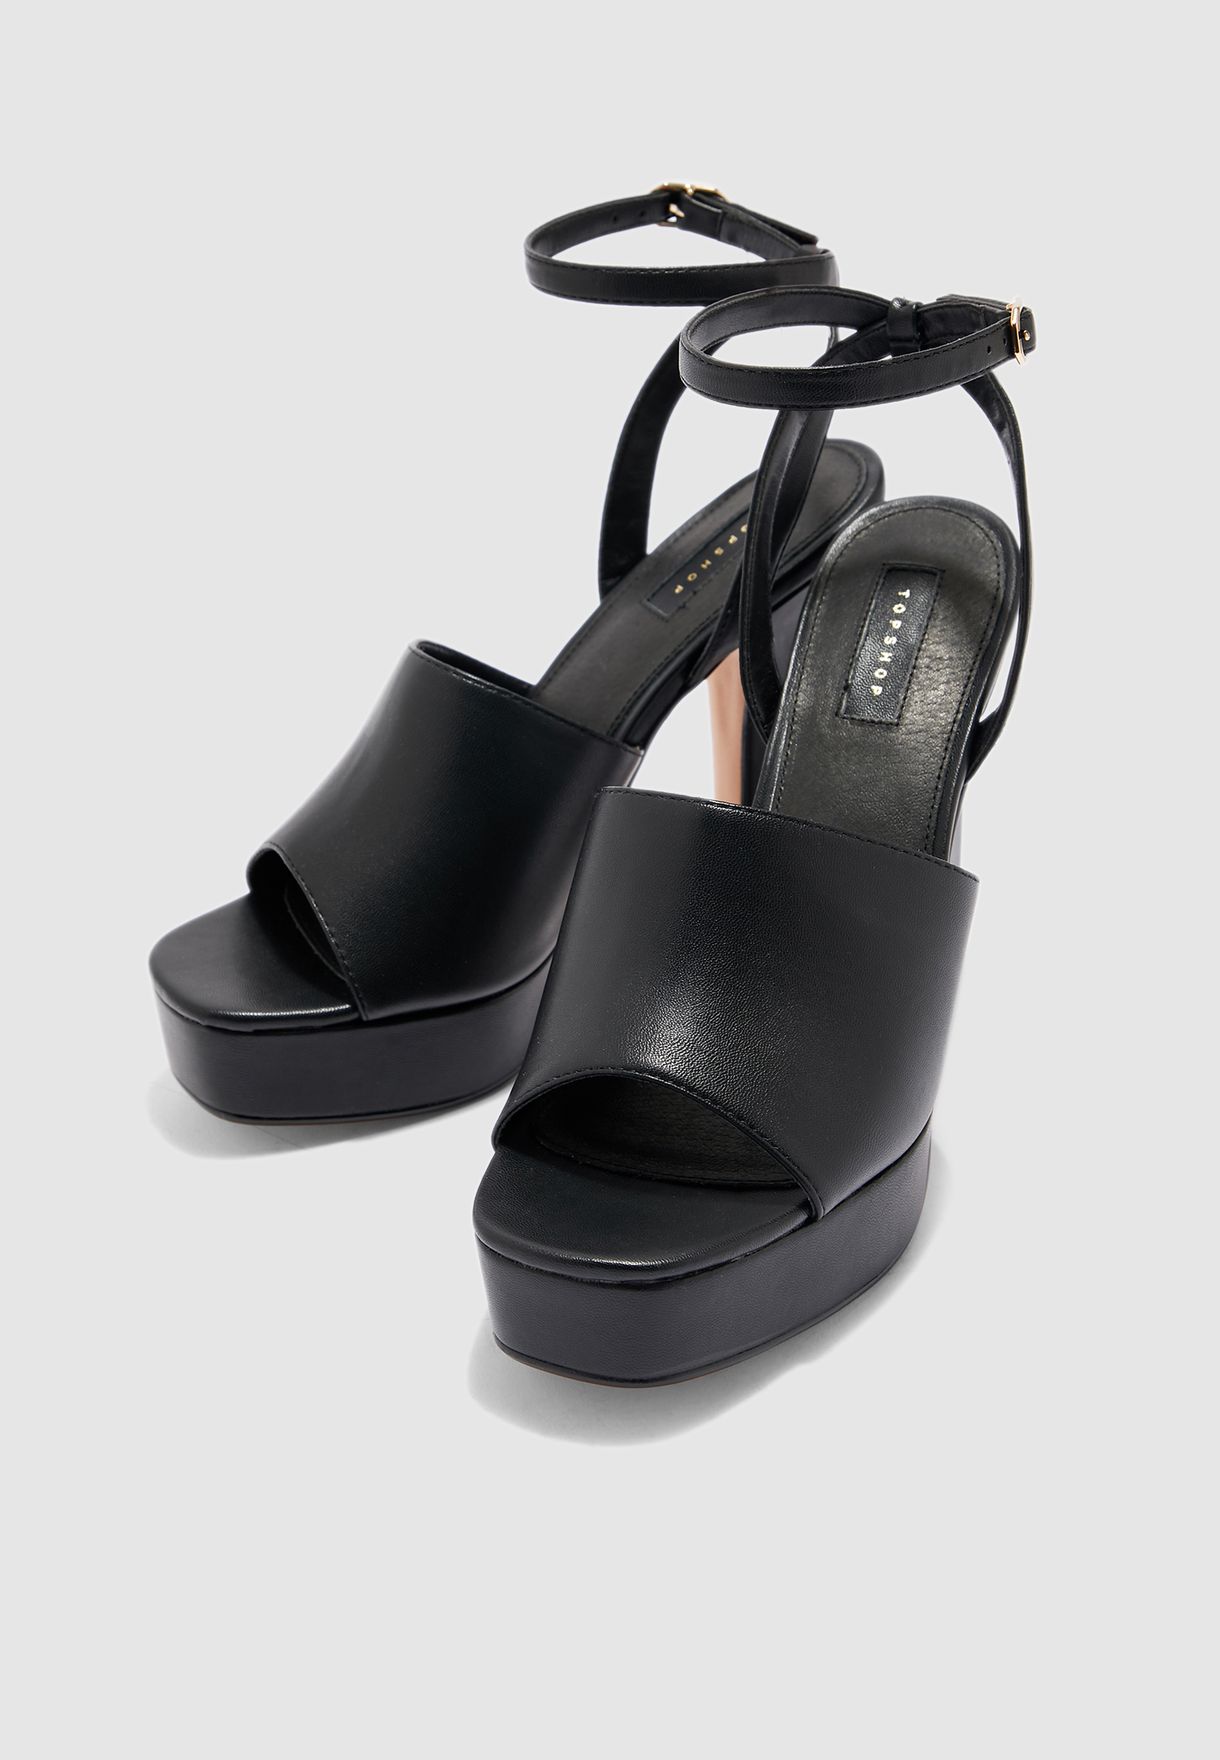 topshop black platform sandals